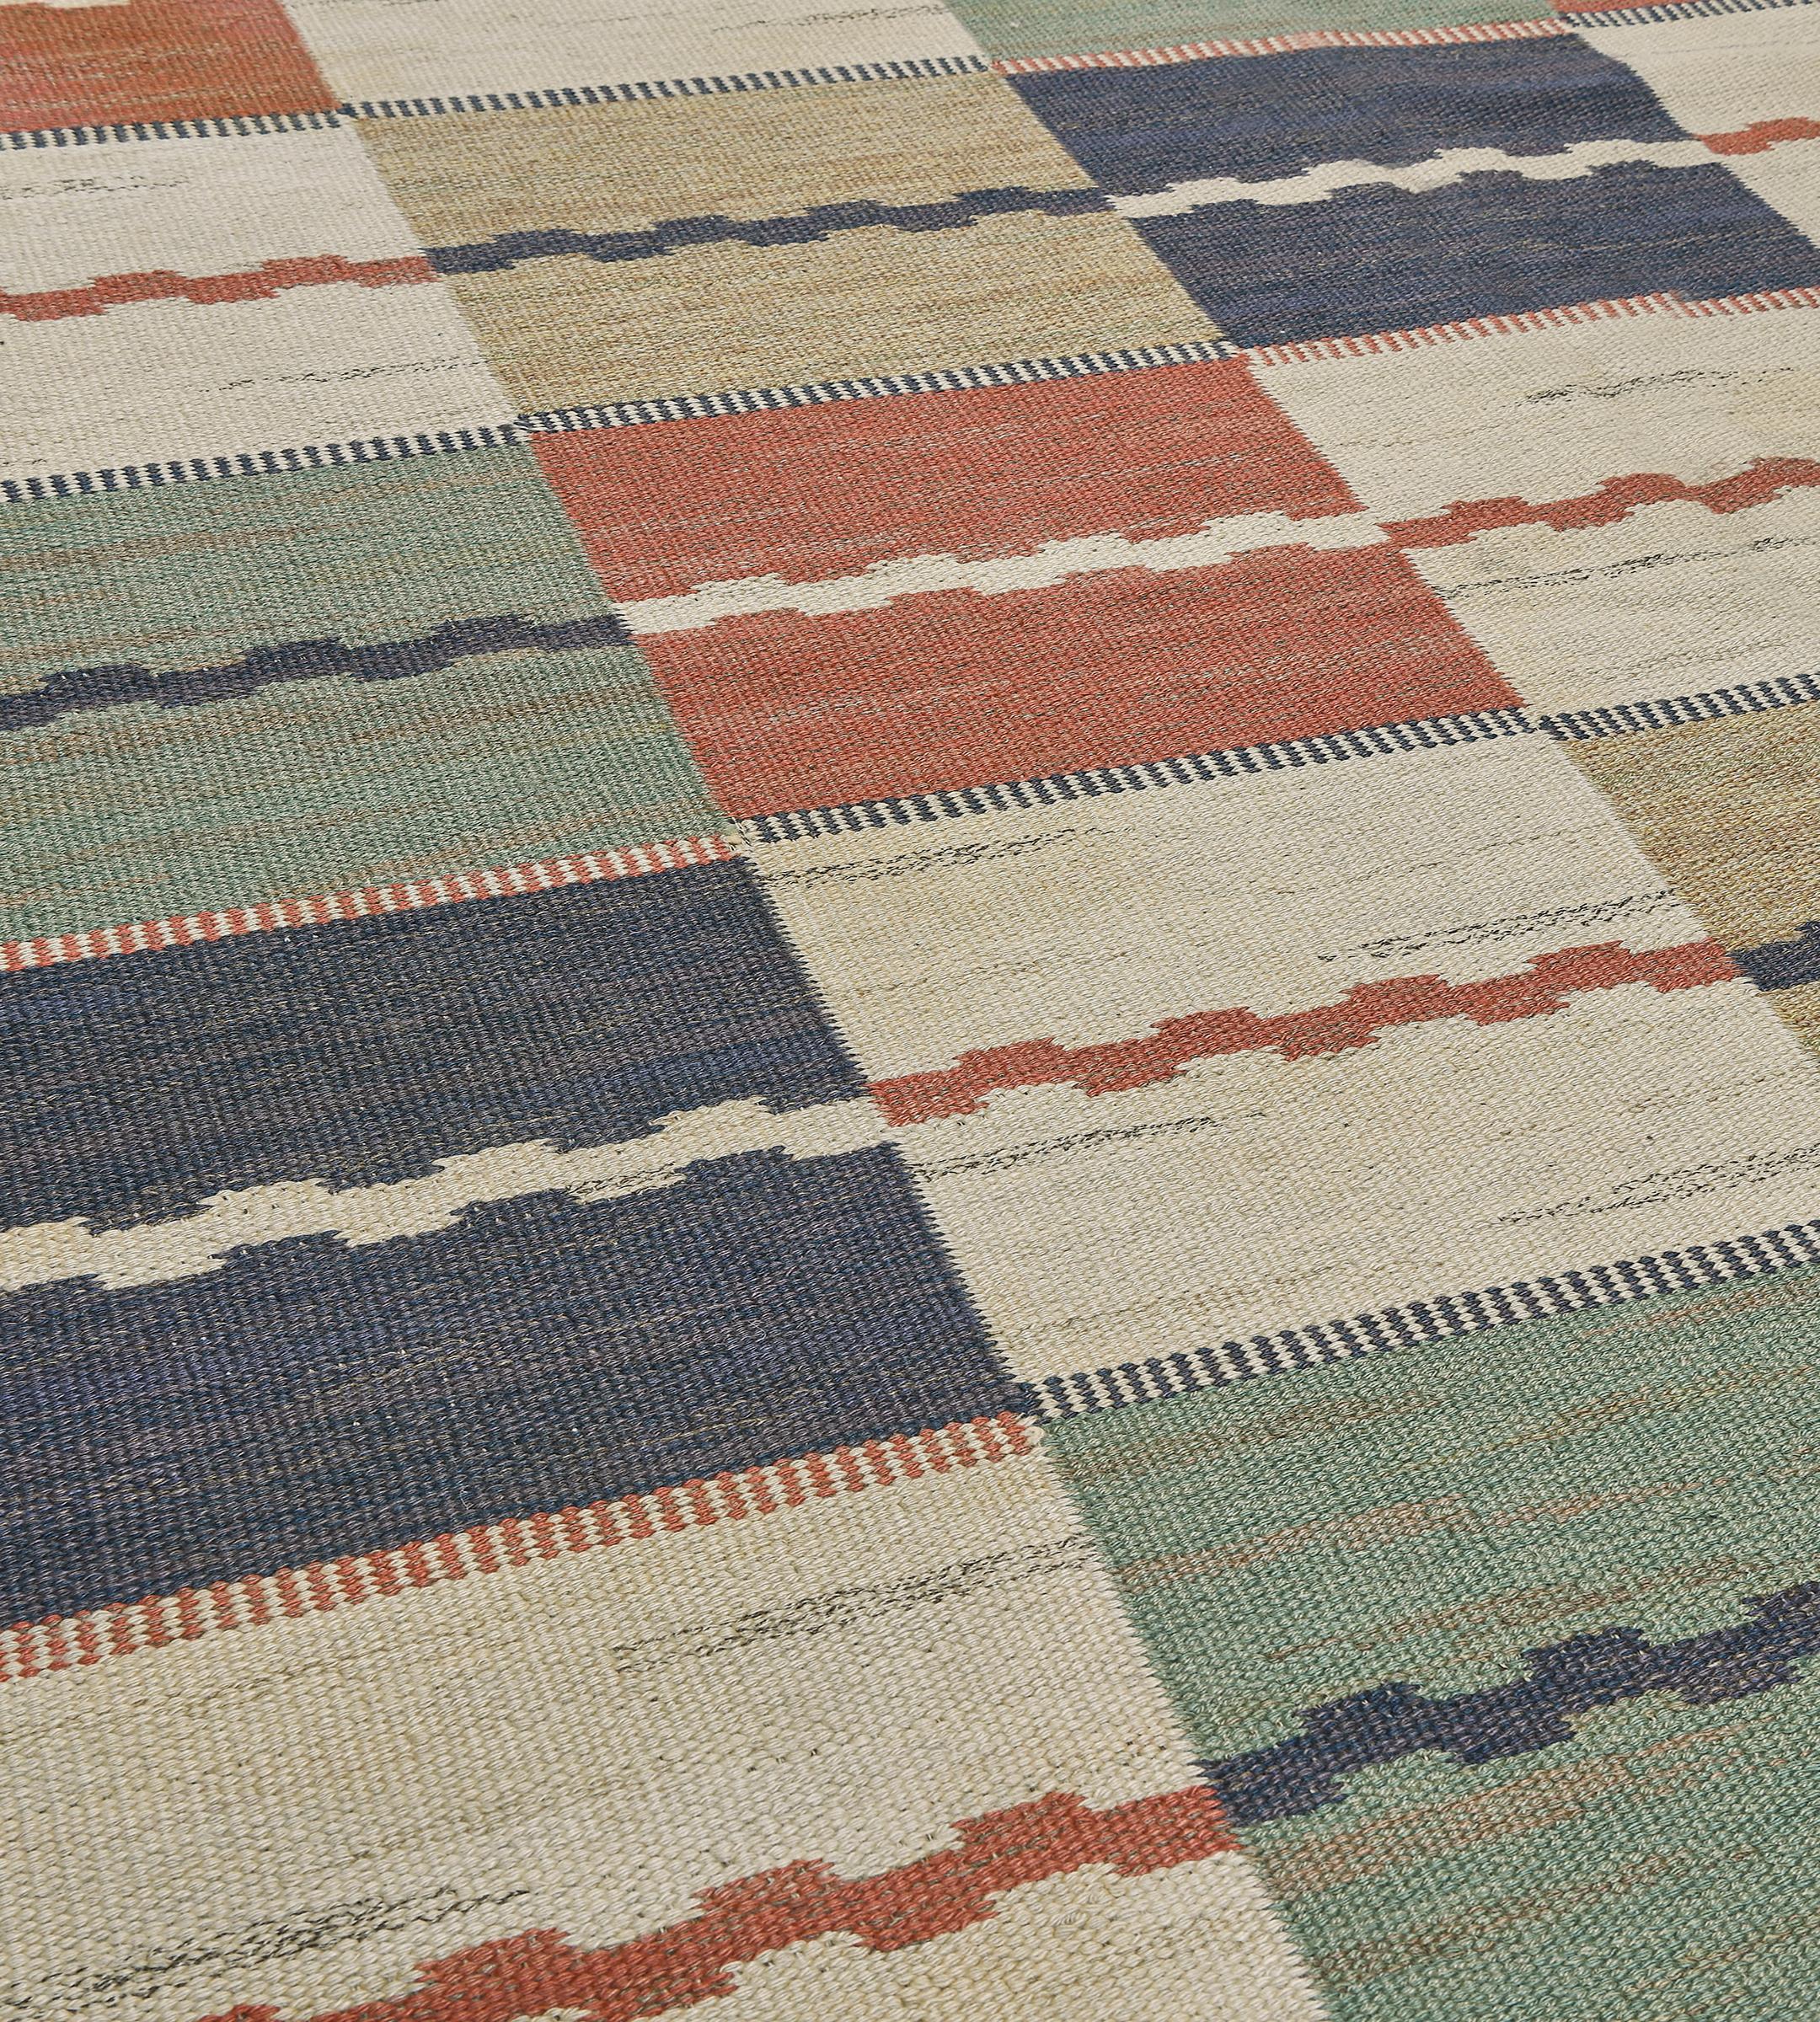 Ce tapis déco suédois traditionnel tissé à la main présente un champ à carreaux polychromes à tissage plat interrompu par de délicates rayures géométriques, dans une bordure latérale géométrique similaire et fantaisiste. Cet exemple exceptionnel de